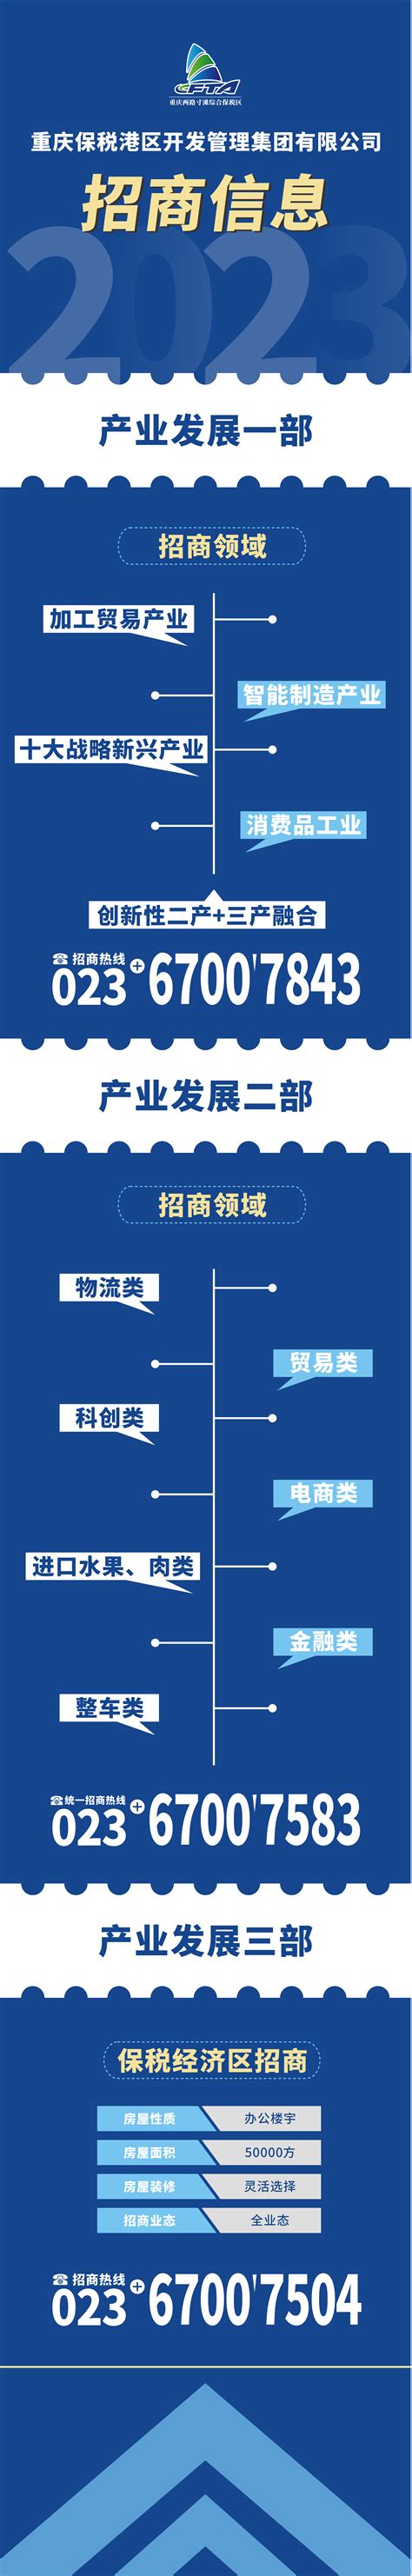 喜迎二十大丨重庆两路果园港综合保税区奋楫扬帆绘新图